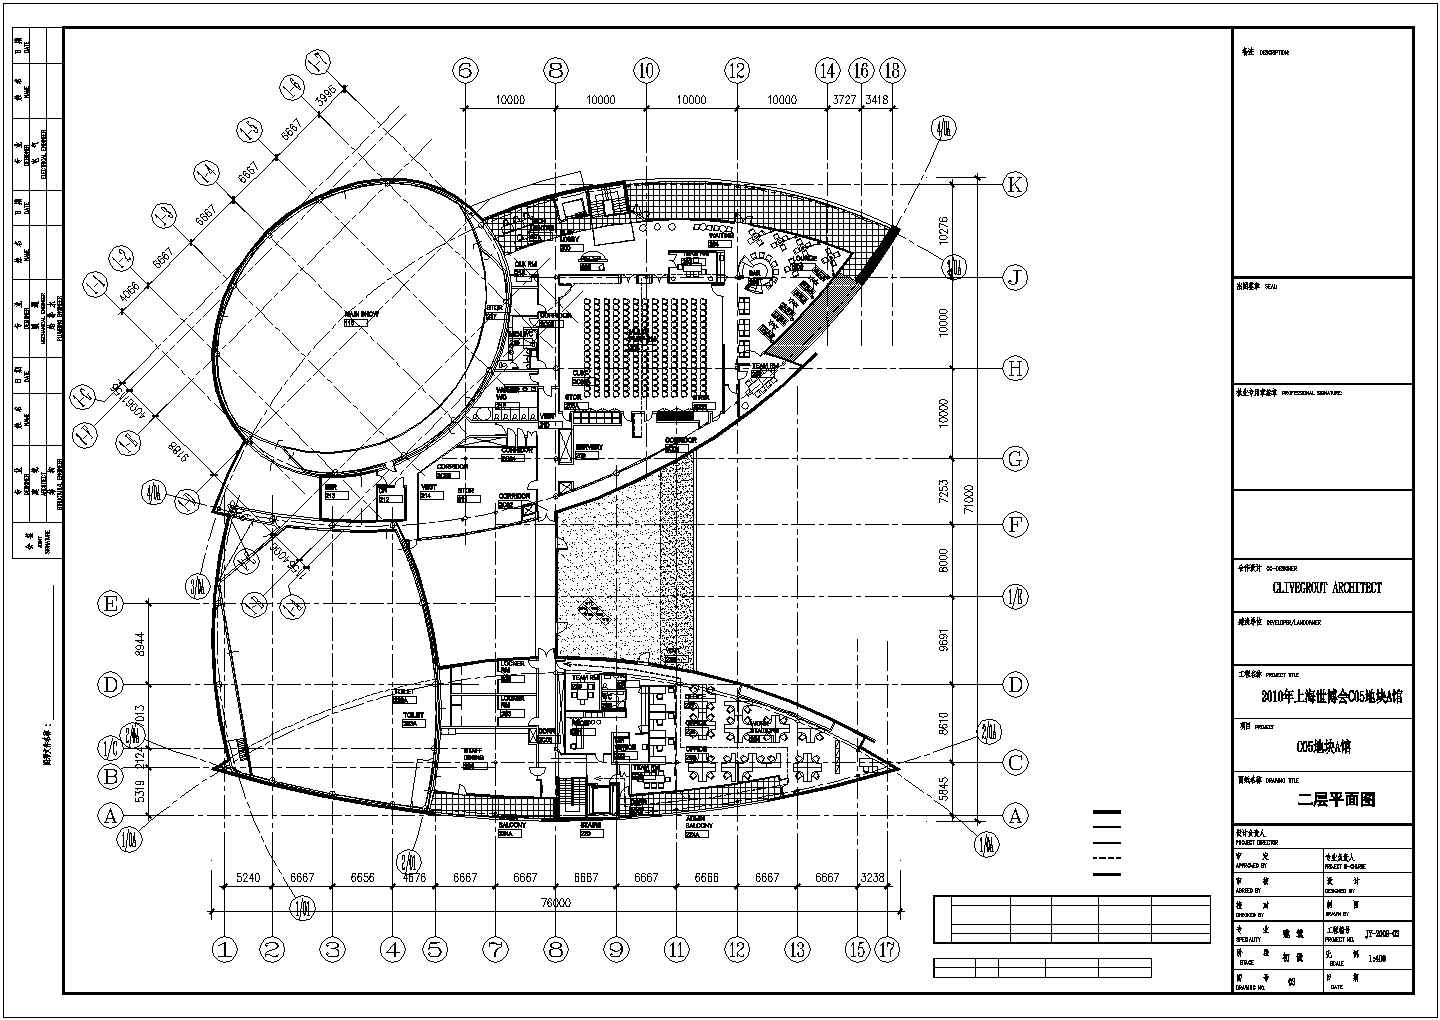 6141平米展览展馆CAD建筑初步设计方案图-二层平面图